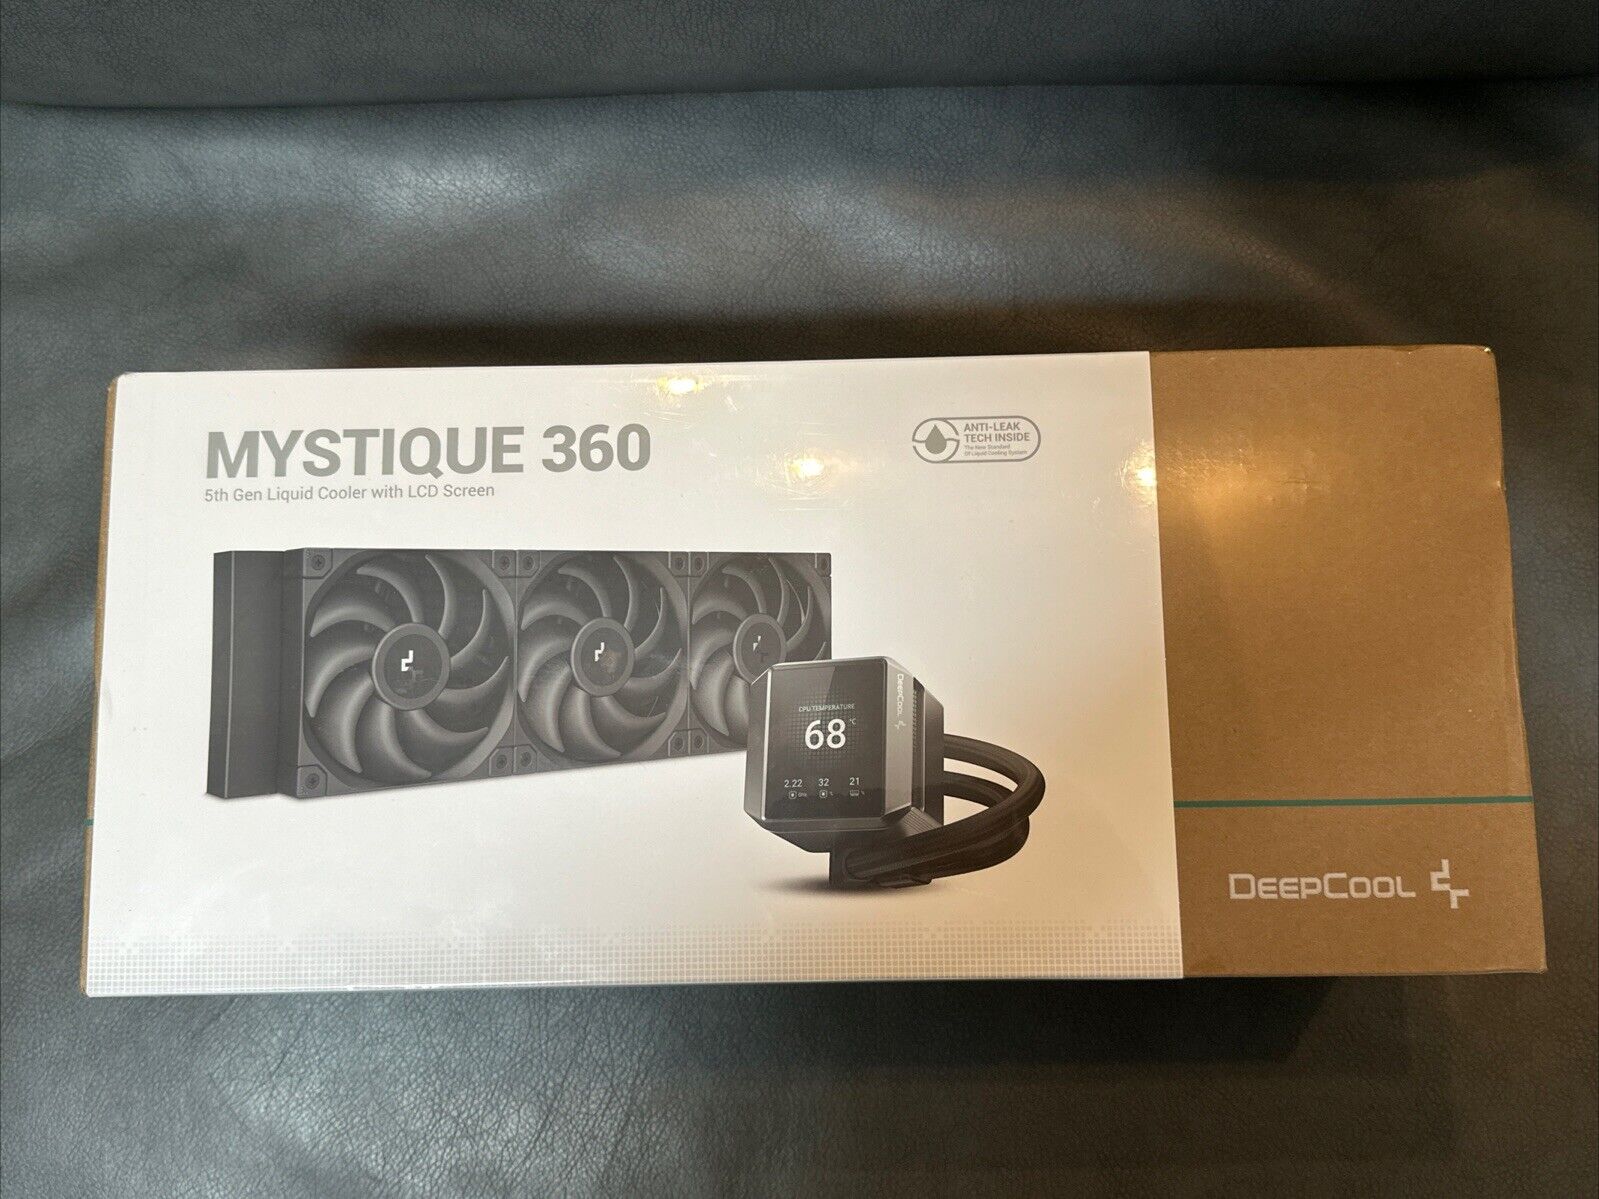 DeepCool Mystique 360 5th Gen Liquid Cooler with LCD Screen 360mm Pump 3400RPM